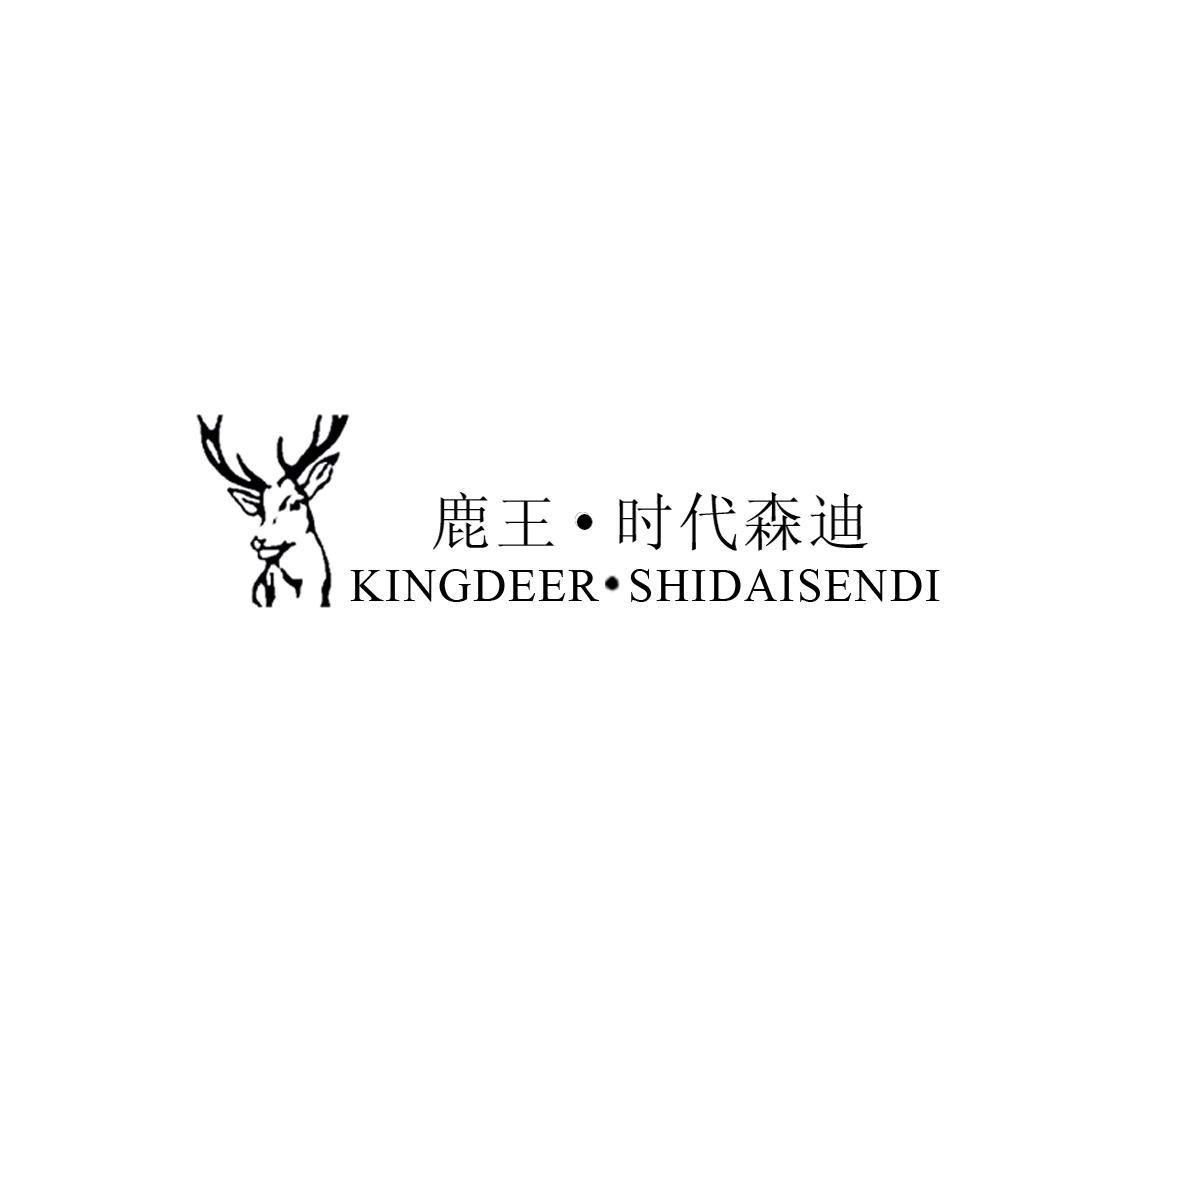 鹿王·时代森迪 KINGDEER·SHIDAISENDI